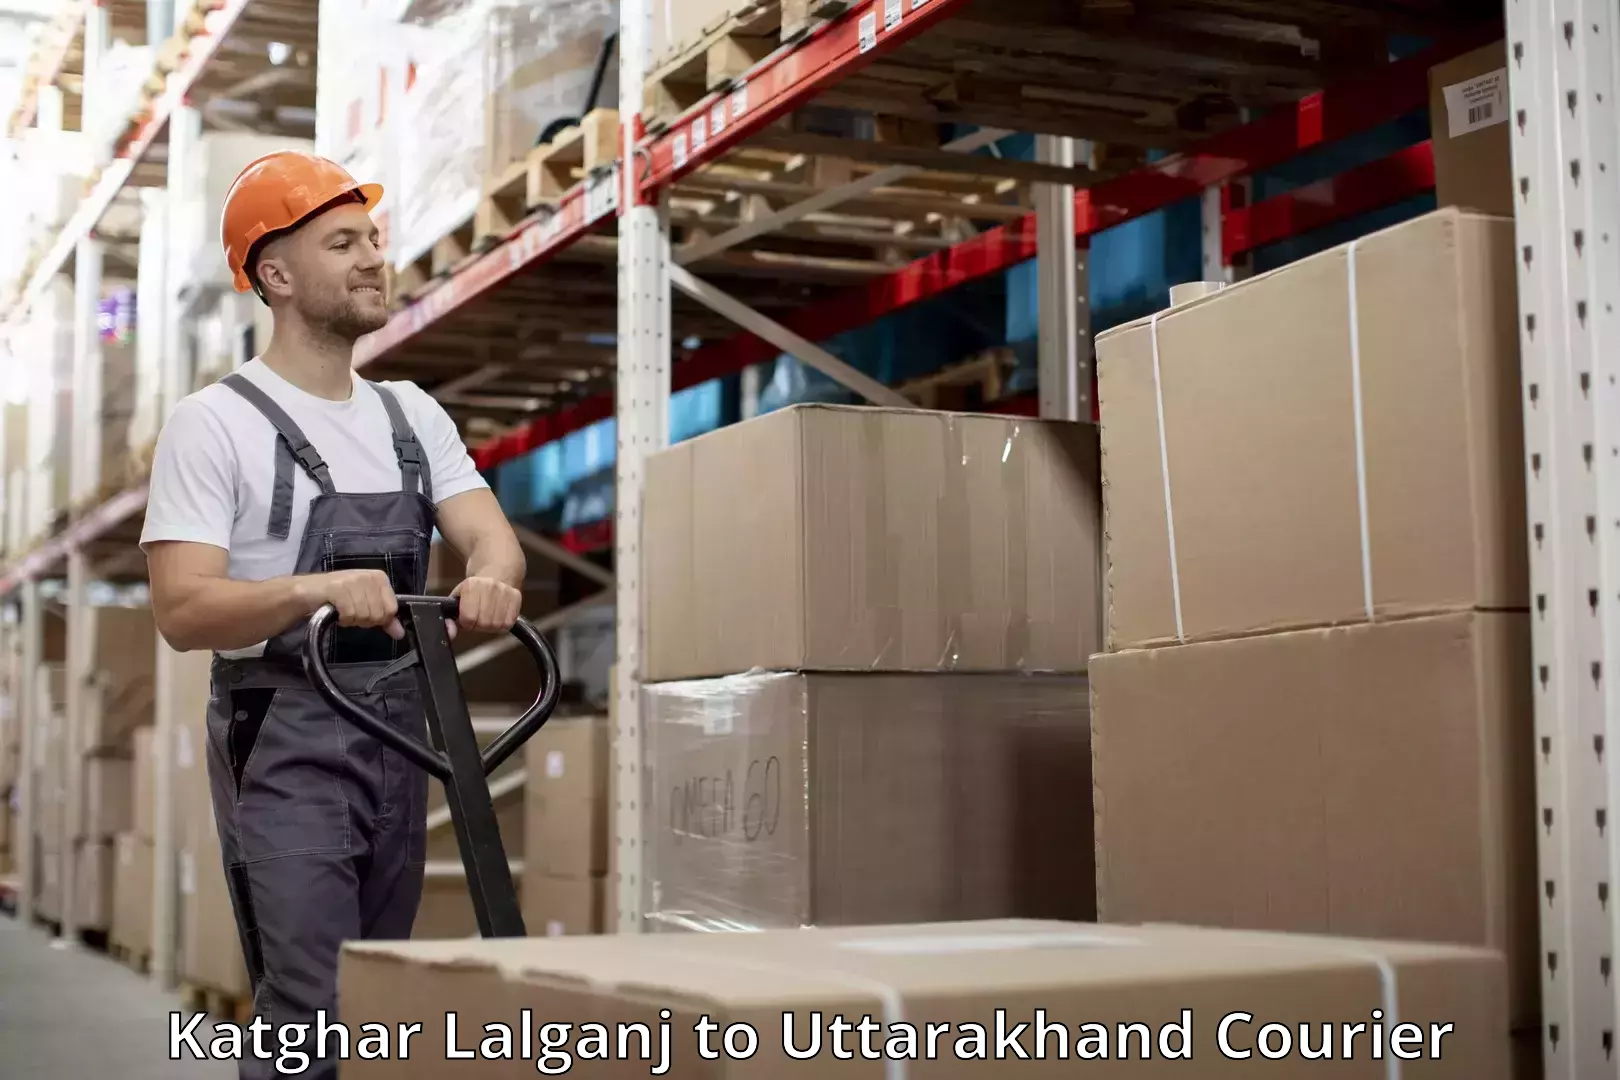 Luggage shipping service Katghar Lalganj to Uttarakhand